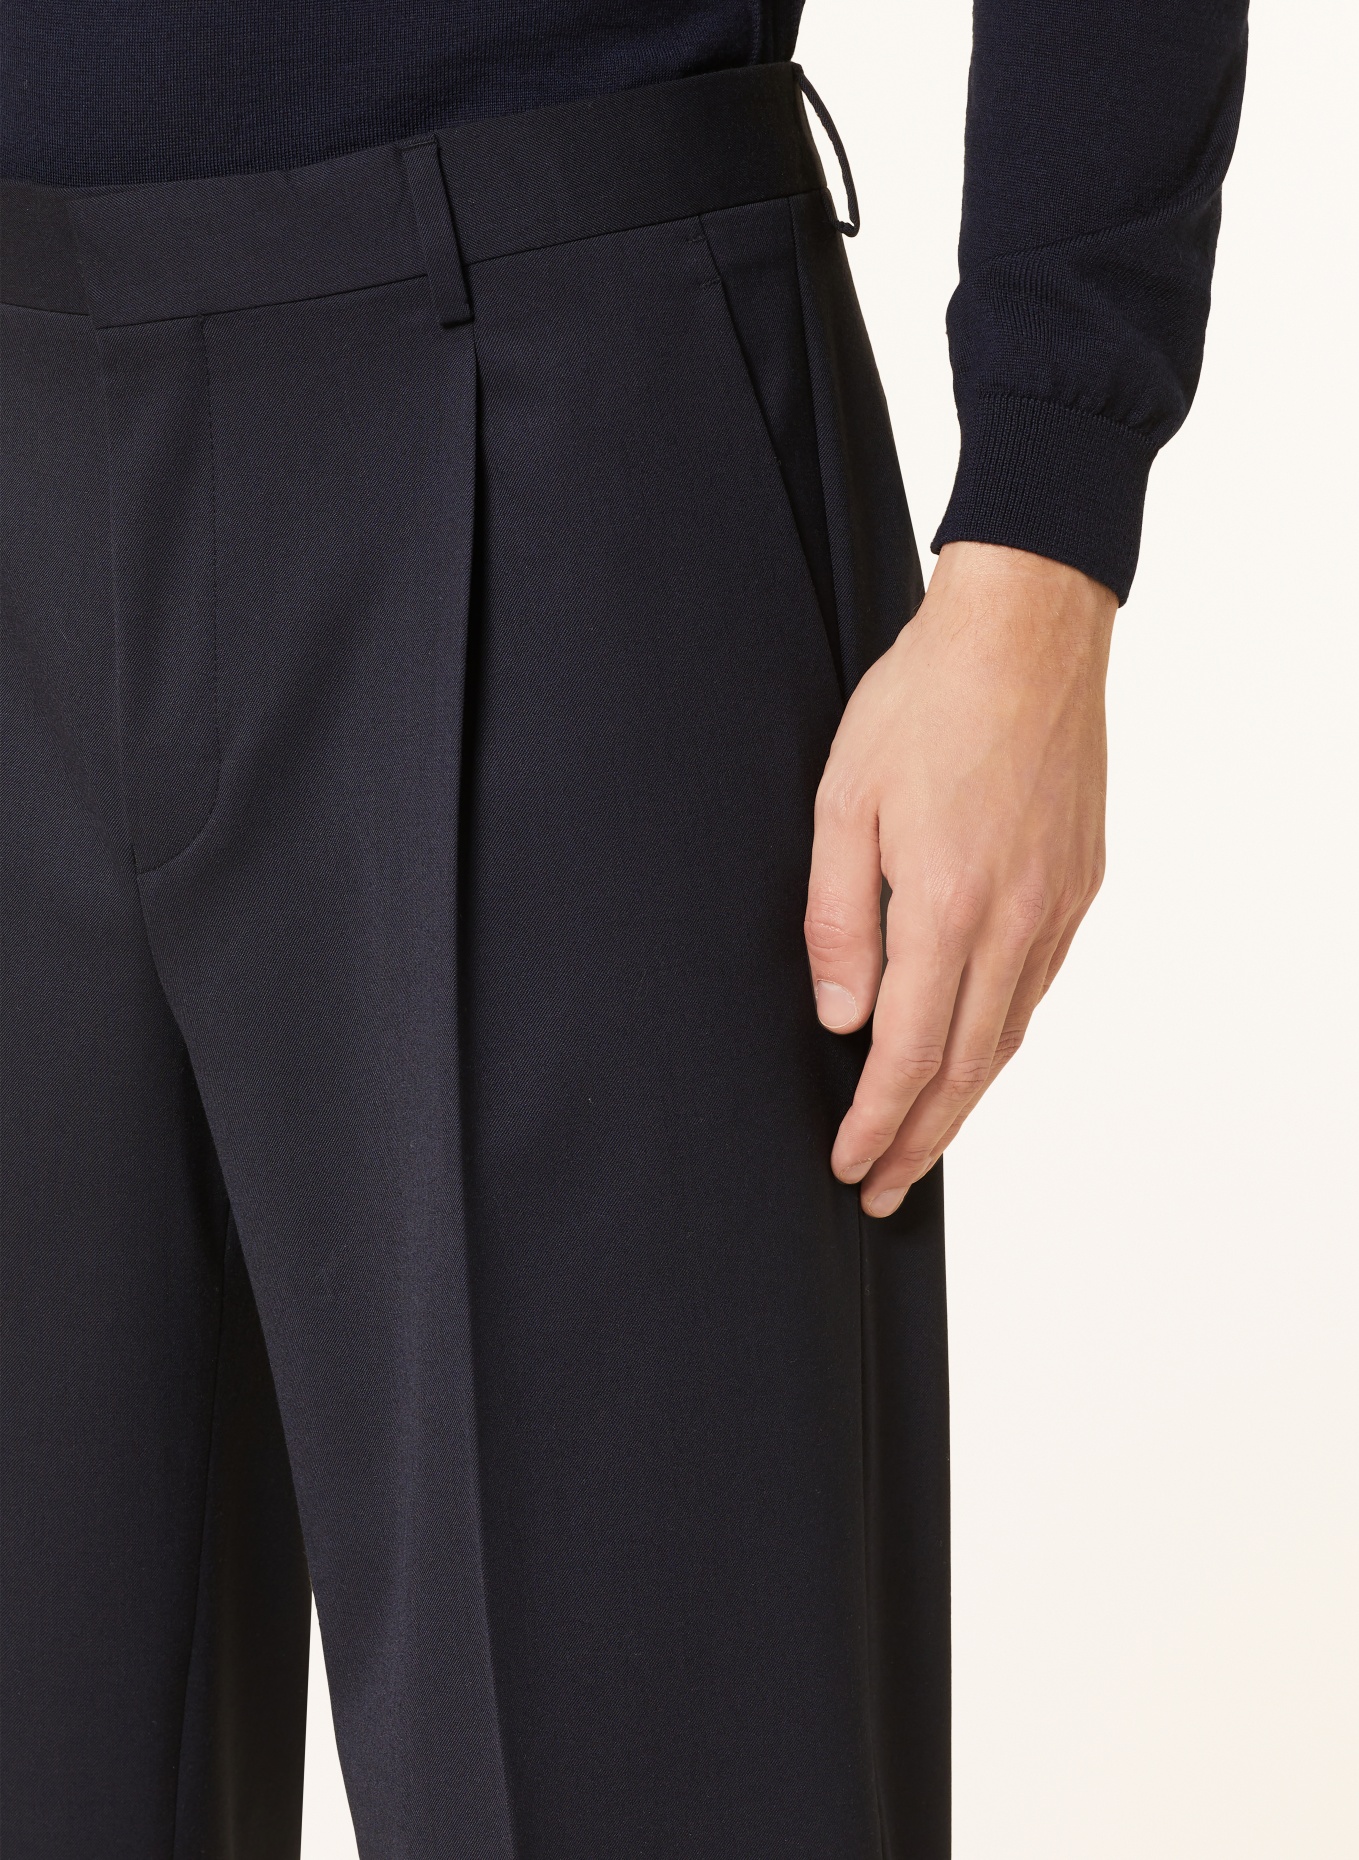 TIGER OF SWEDEN Suit trousers TODNE regular fit, Color: 09C Dark Ink (Image 6)